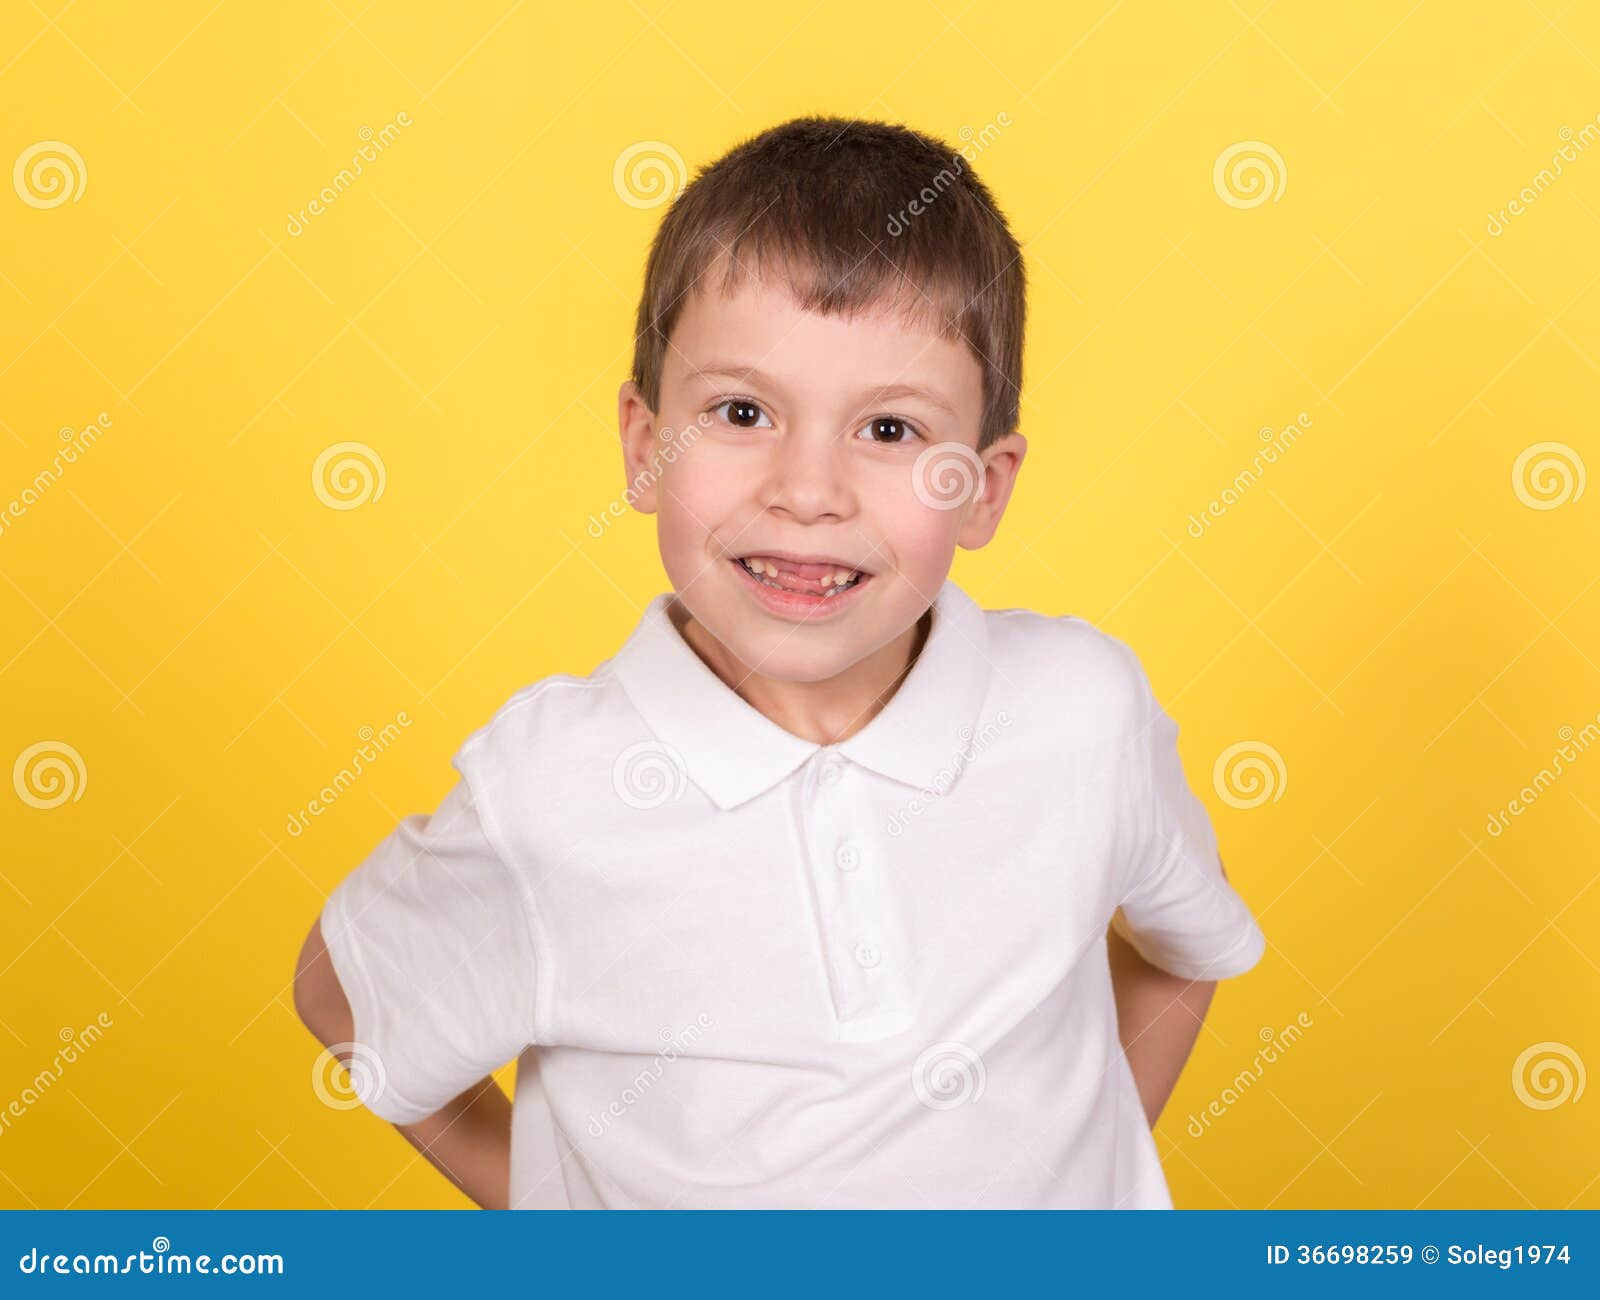 Произведение мальчик в белой рубашке. Портрет мальчика в белой рубашке. Мальчик 8 лет в рубашке фотопортрет. Фотография мальчика в белой рубахе. Ребенок в рубашке фото.